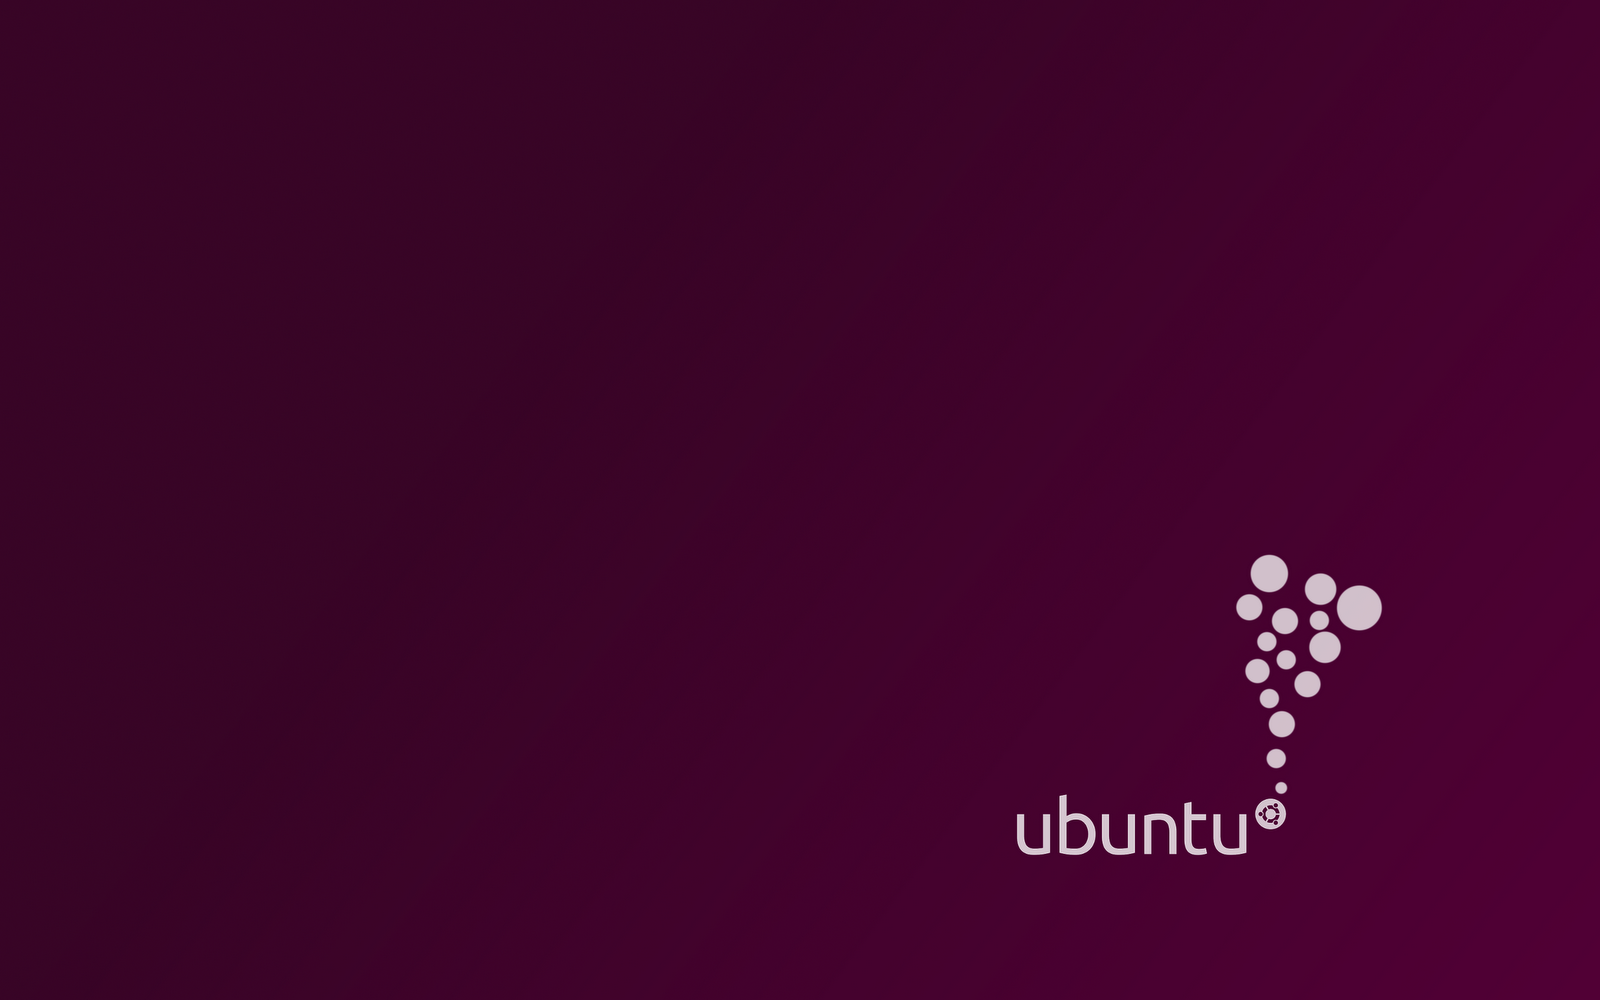 Ubuntu Lucid - Ubuntu 10.10 , HD Wallpaper & Backgrounds